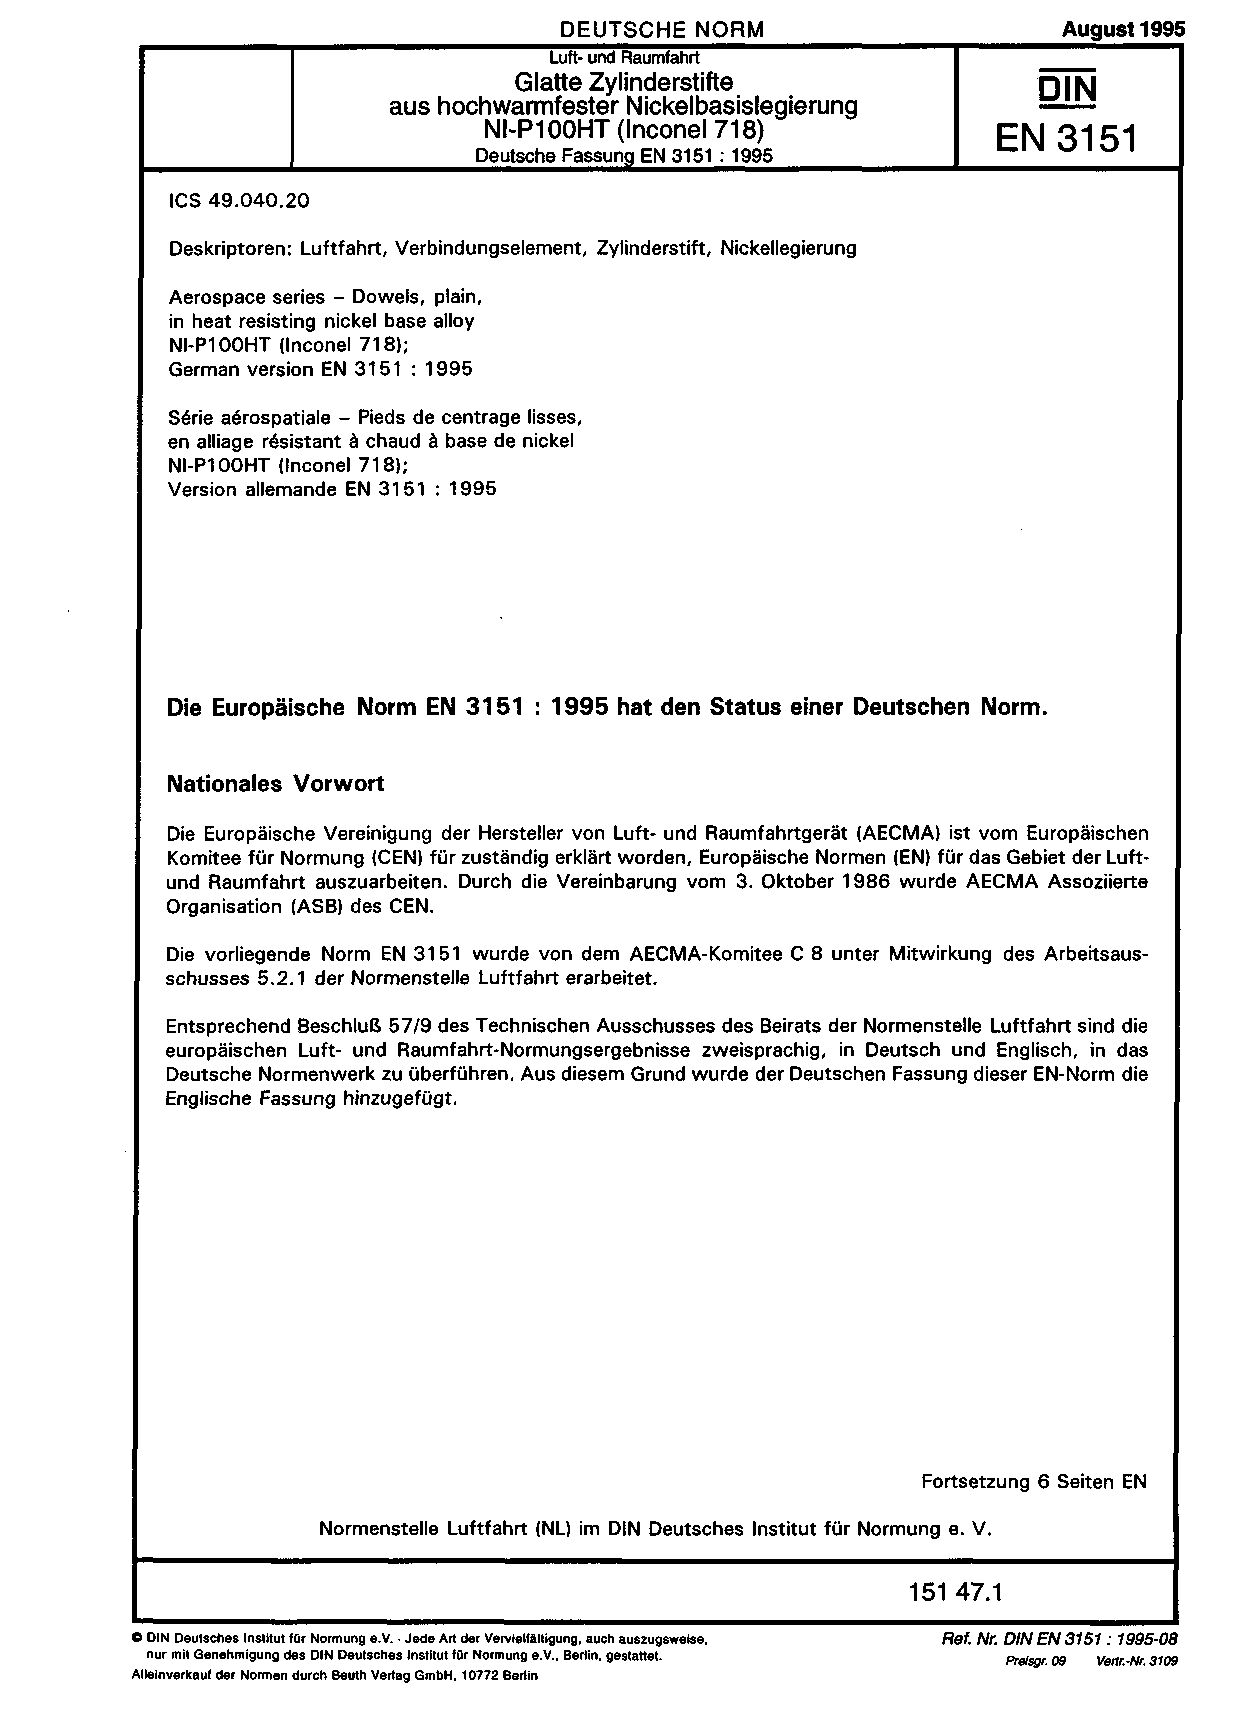 DIN EN 3151:1995封面图